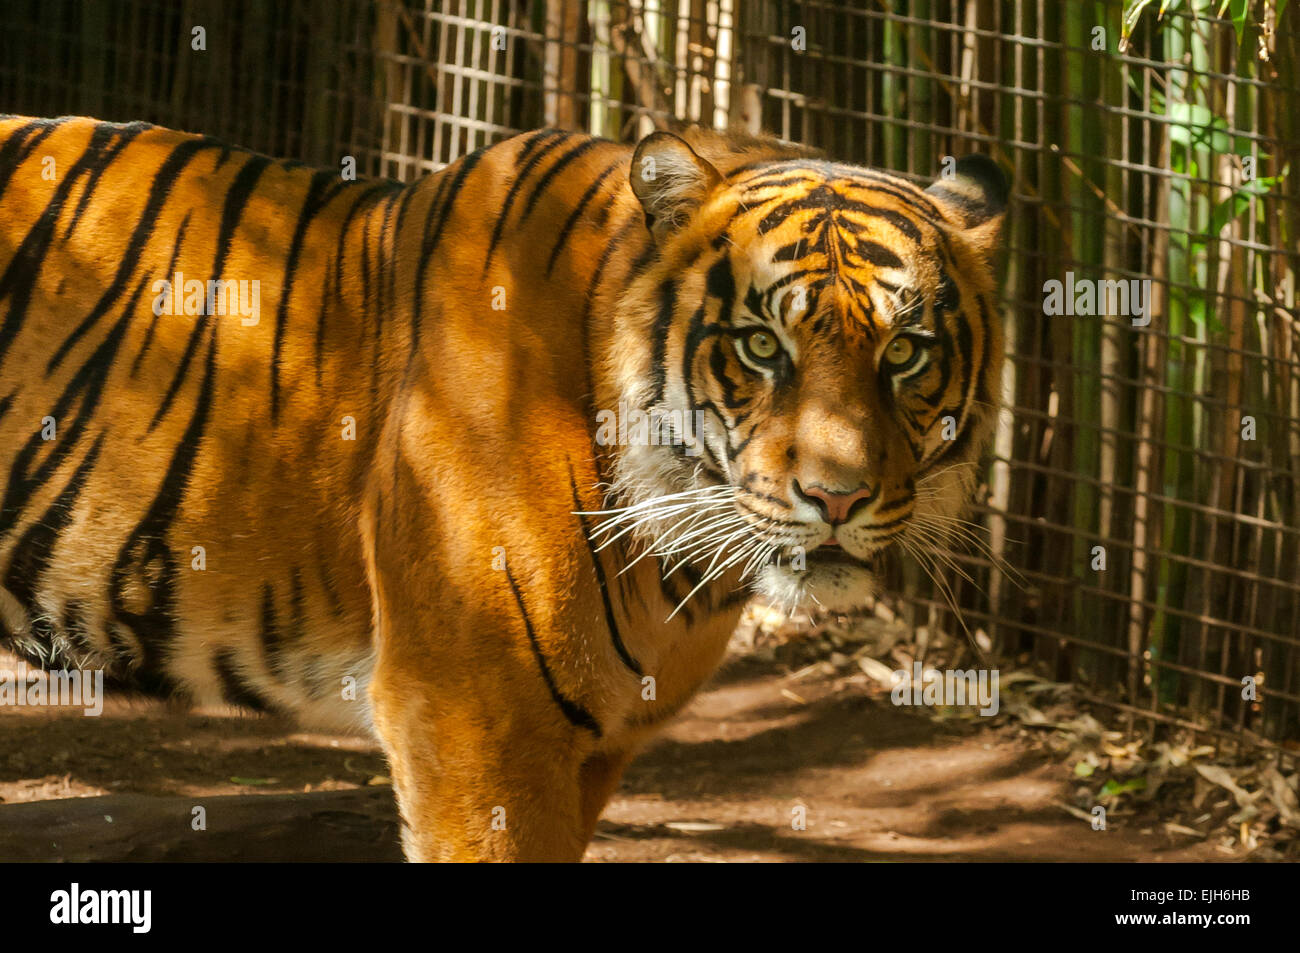 Sumatran Tiger, Panthera tigris sumatrae at Melbourne Zoo Stock Photo